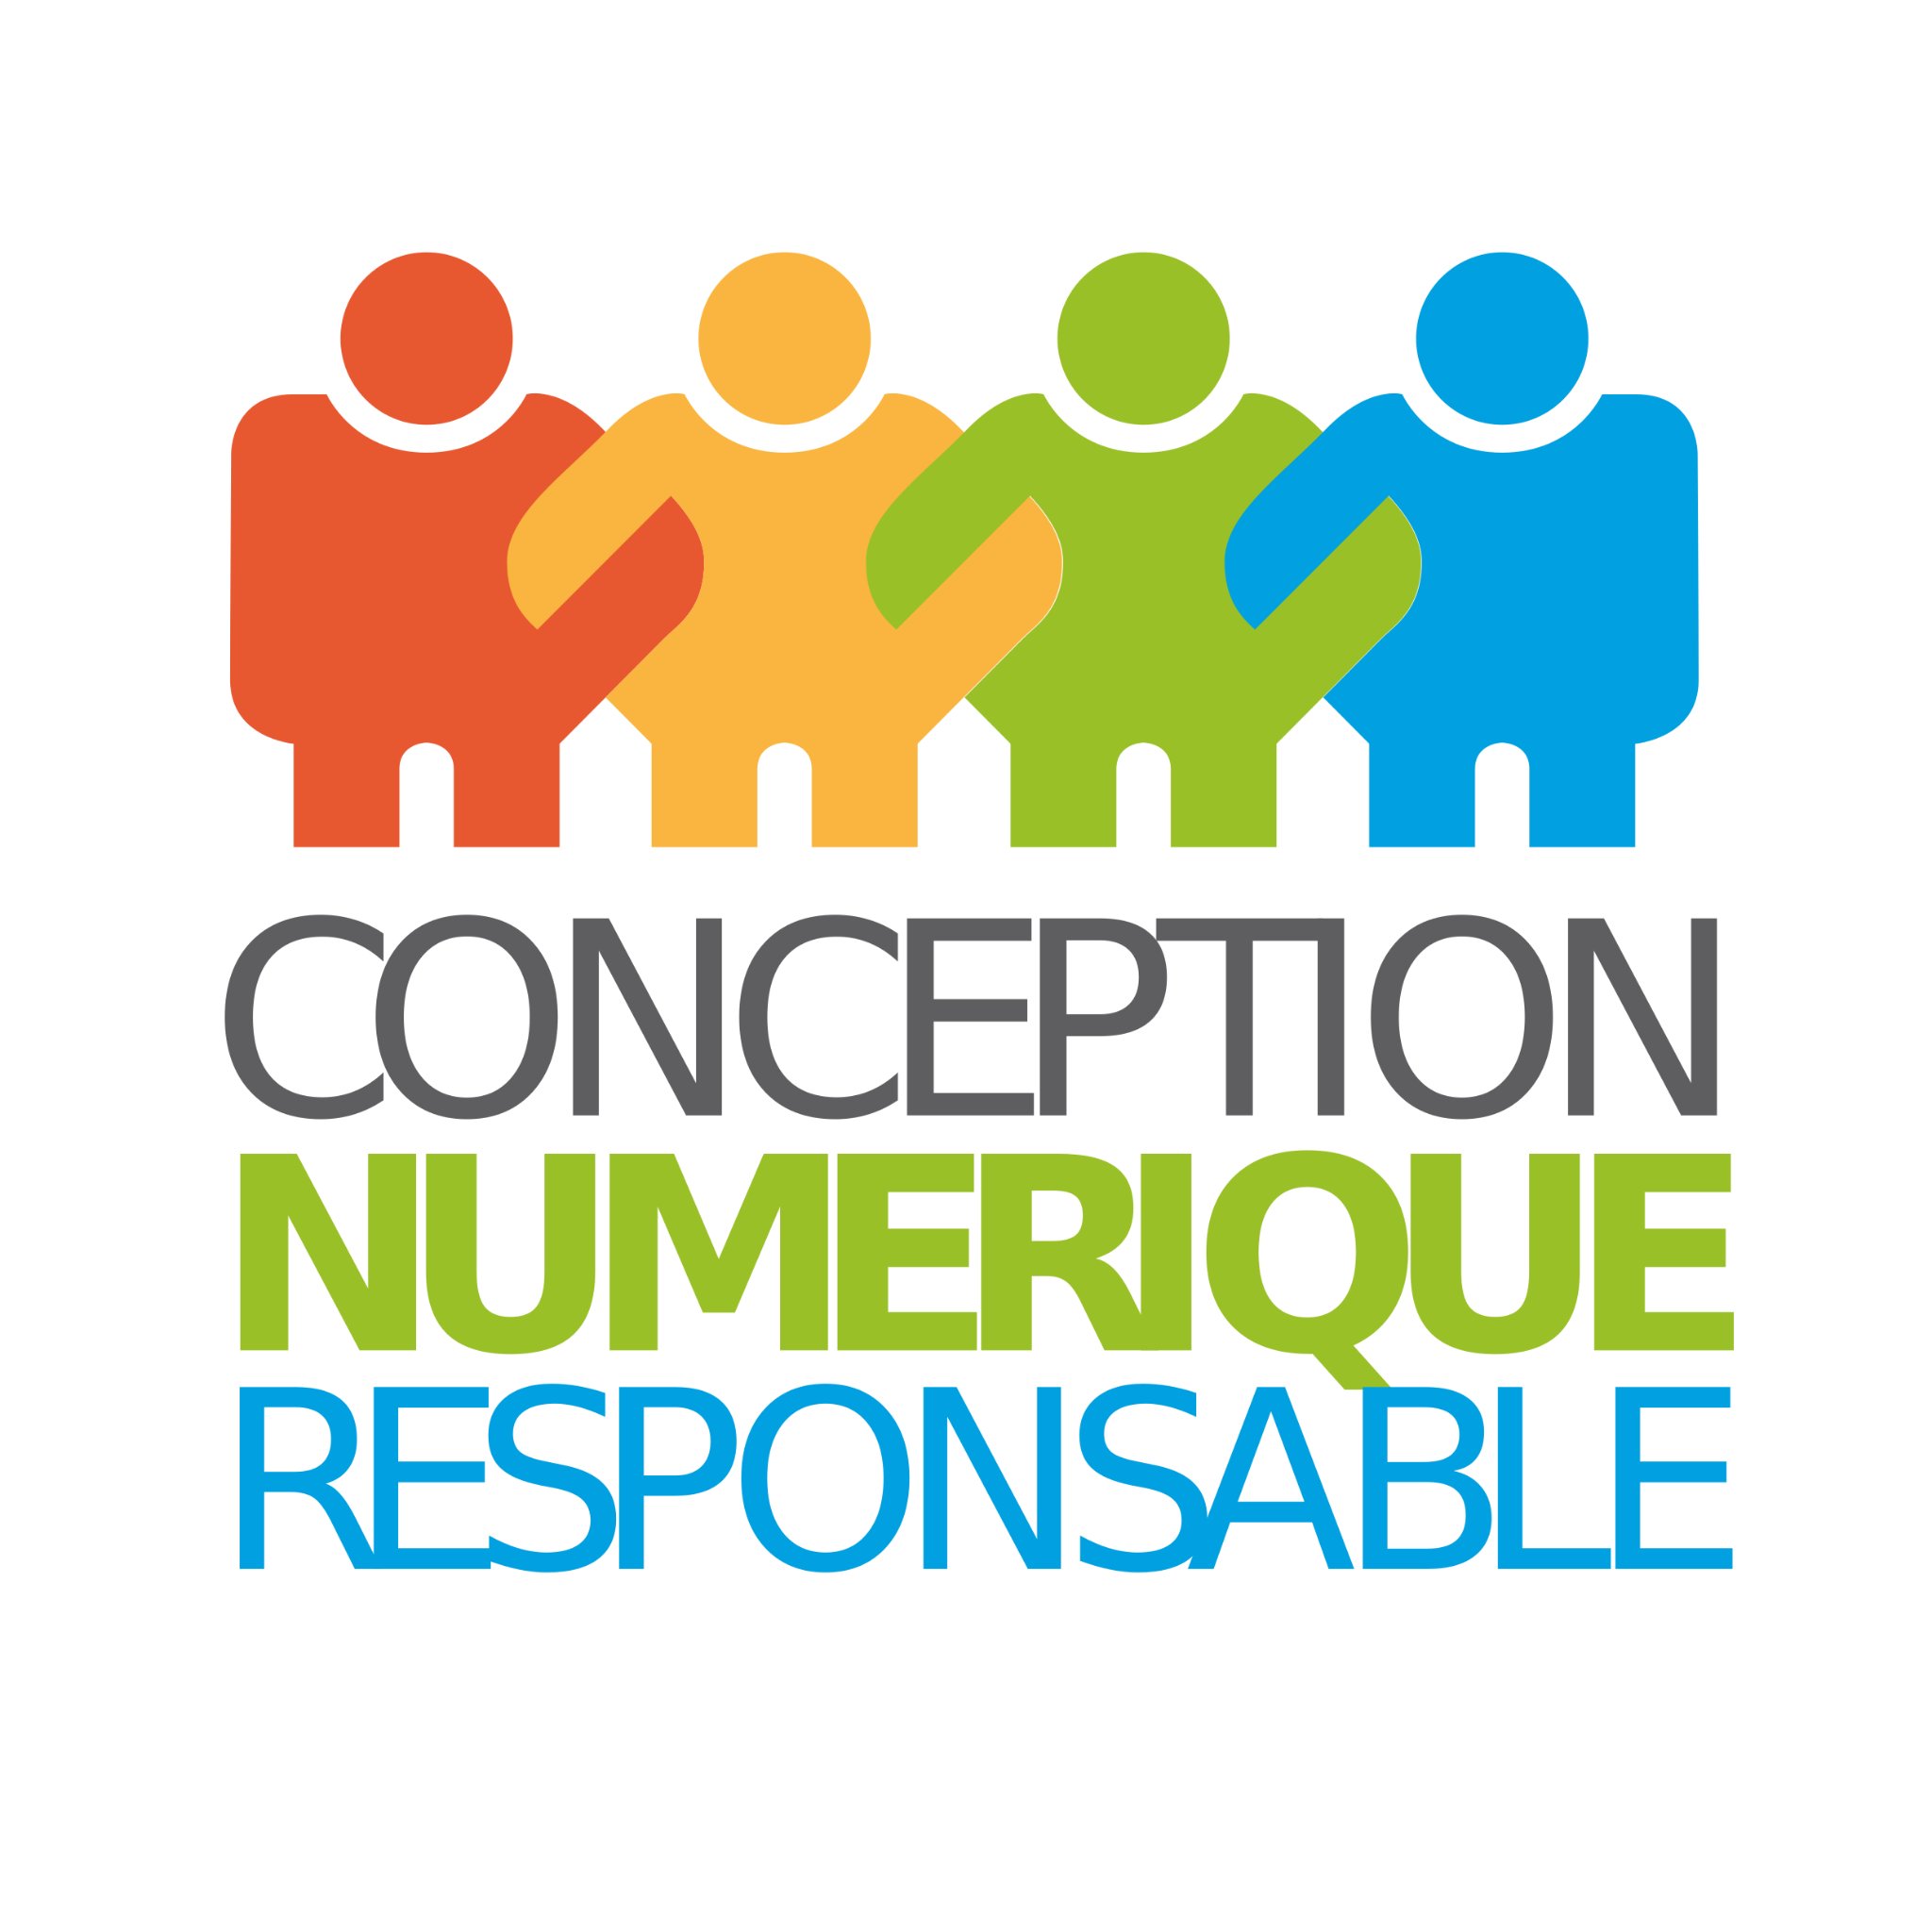 Pour une conception responsable des services numériques. #NumériqueResponsable #ecoconception #accessibilité #DD #RSE